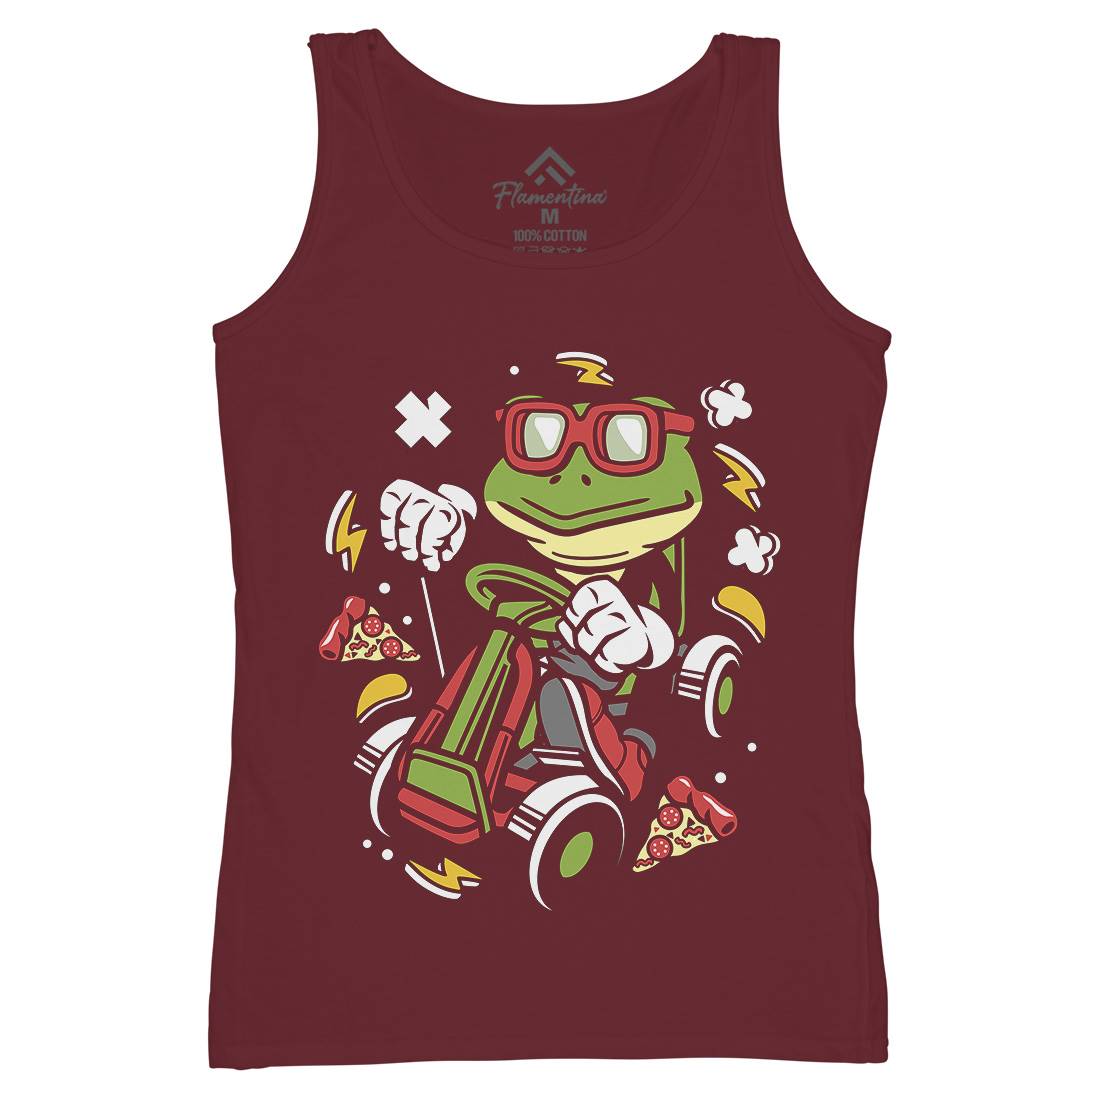 Frog Go-Kart Racer Womens Organic Tank Top Vest Sport C549